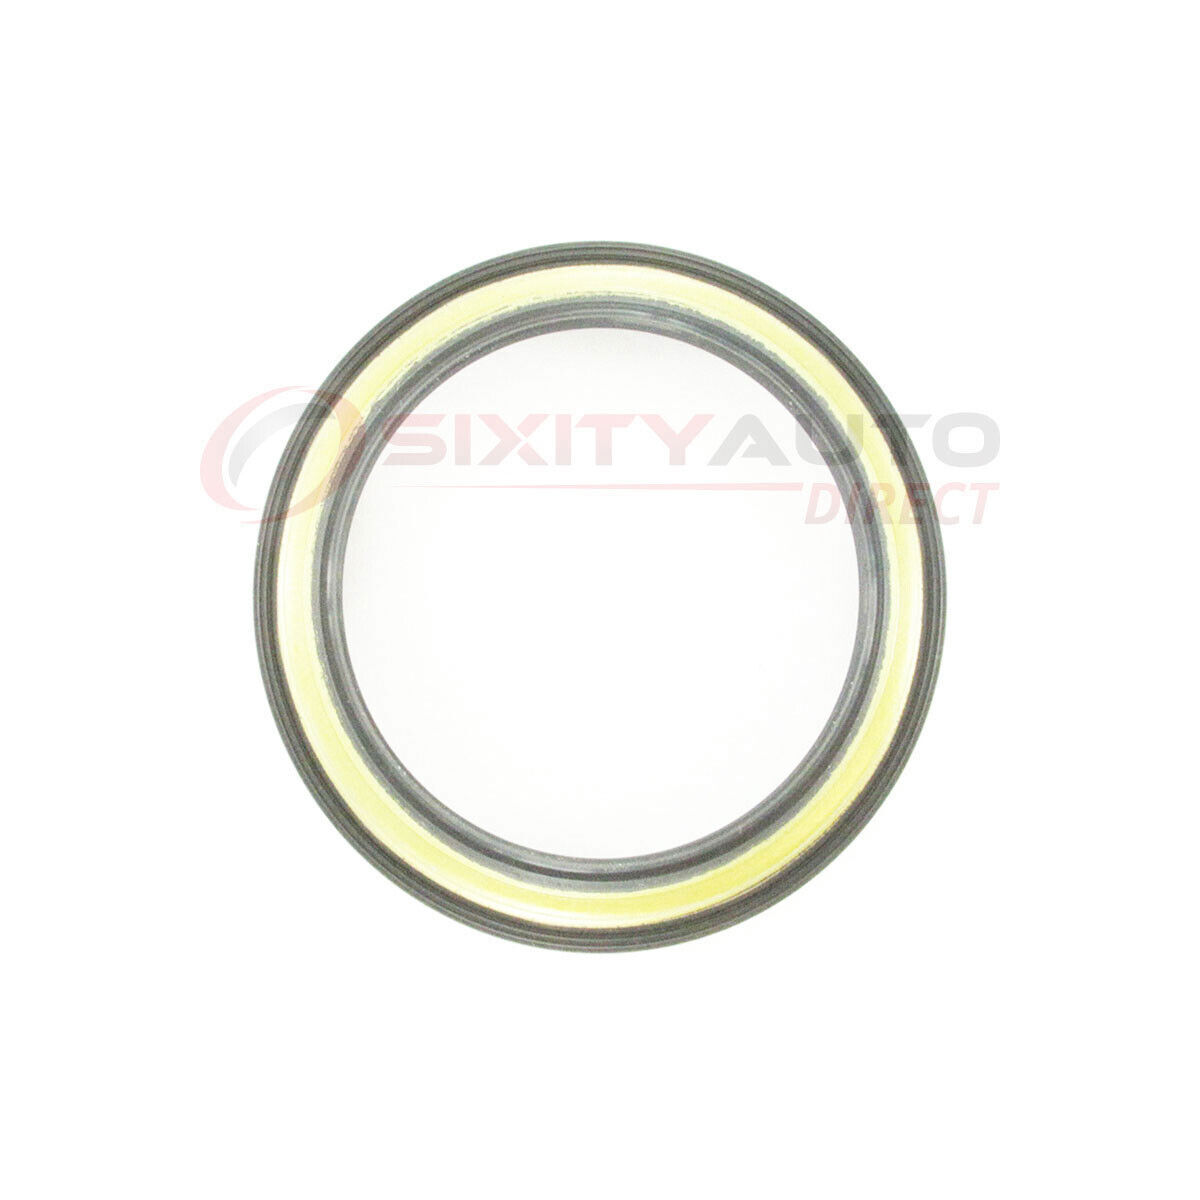 SKF Wheel Seal for 2002-2003 Mazda Protege5 2.0L L4 - Axle Hub Tire xv